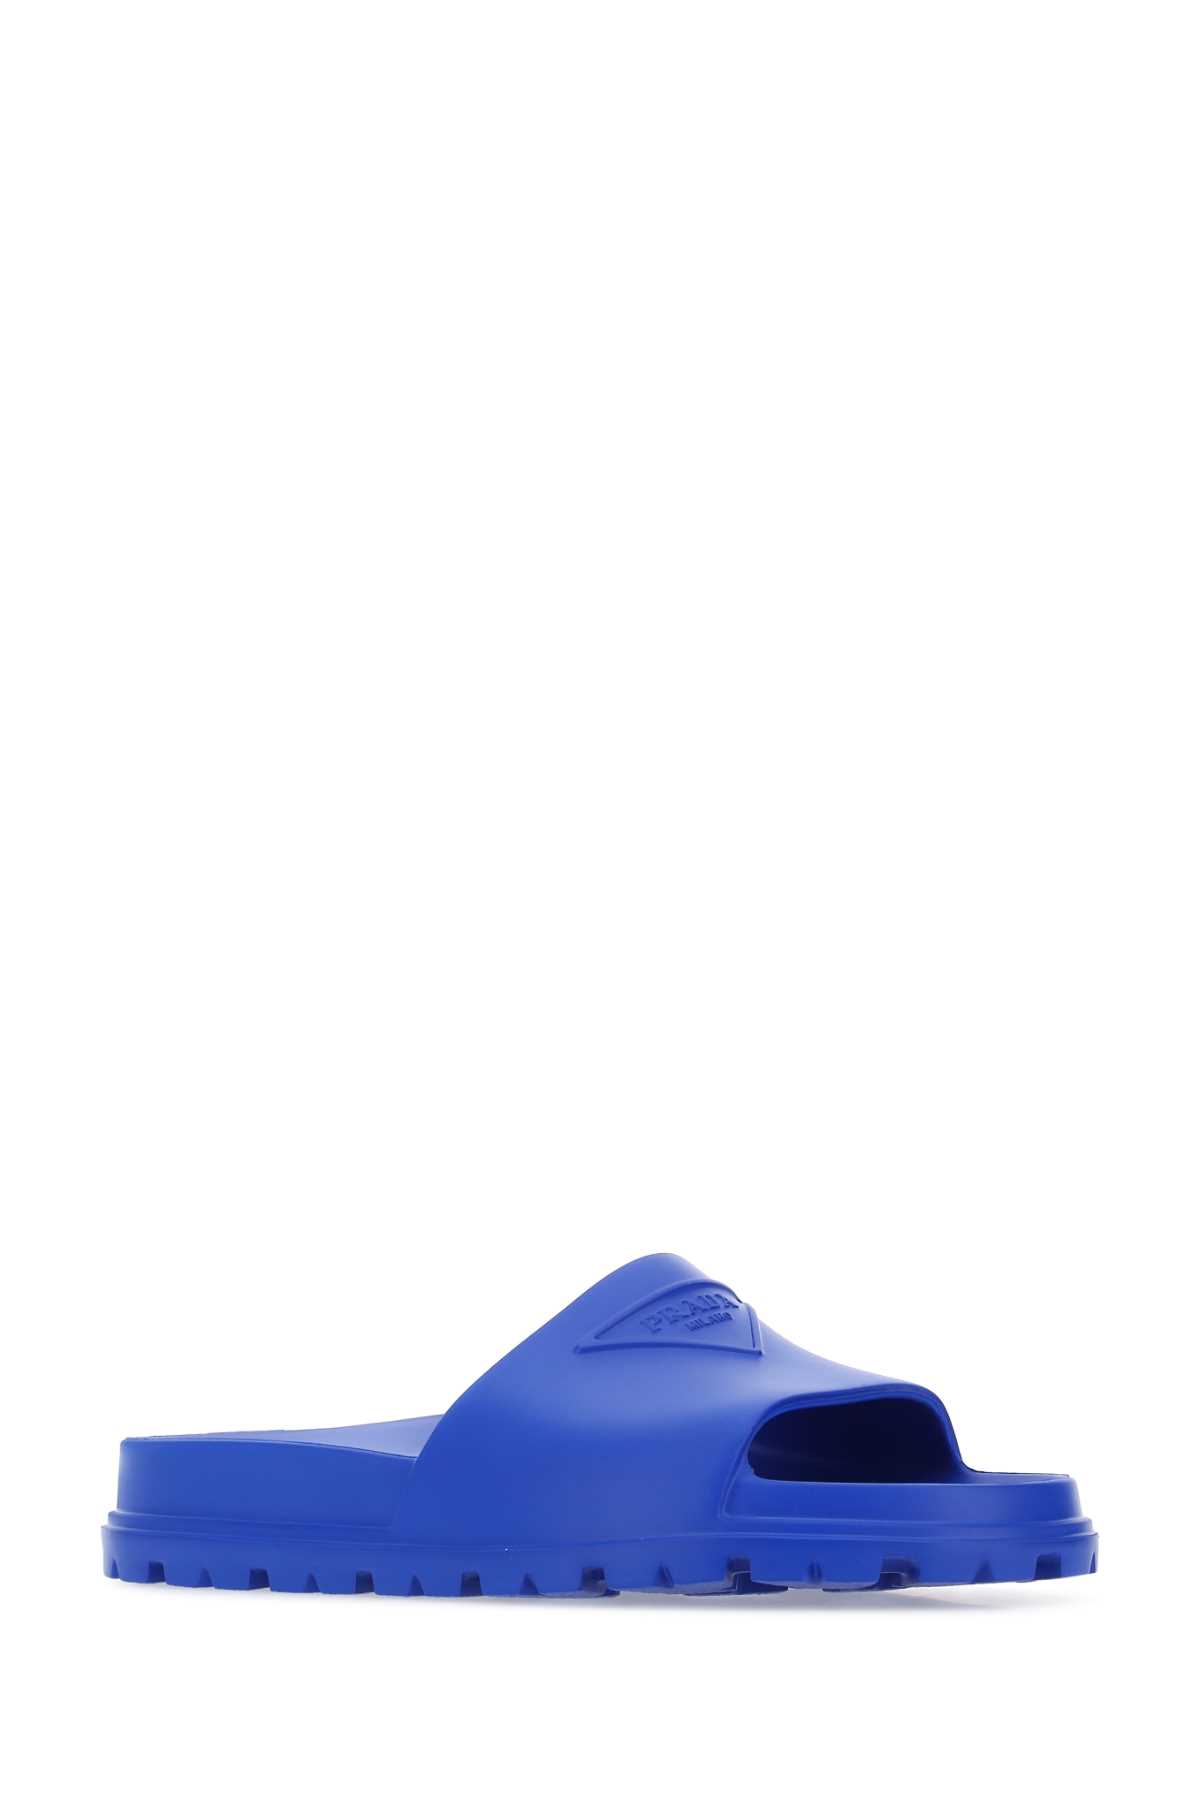 Shop Prada Blue Rubber Slippers In F0013